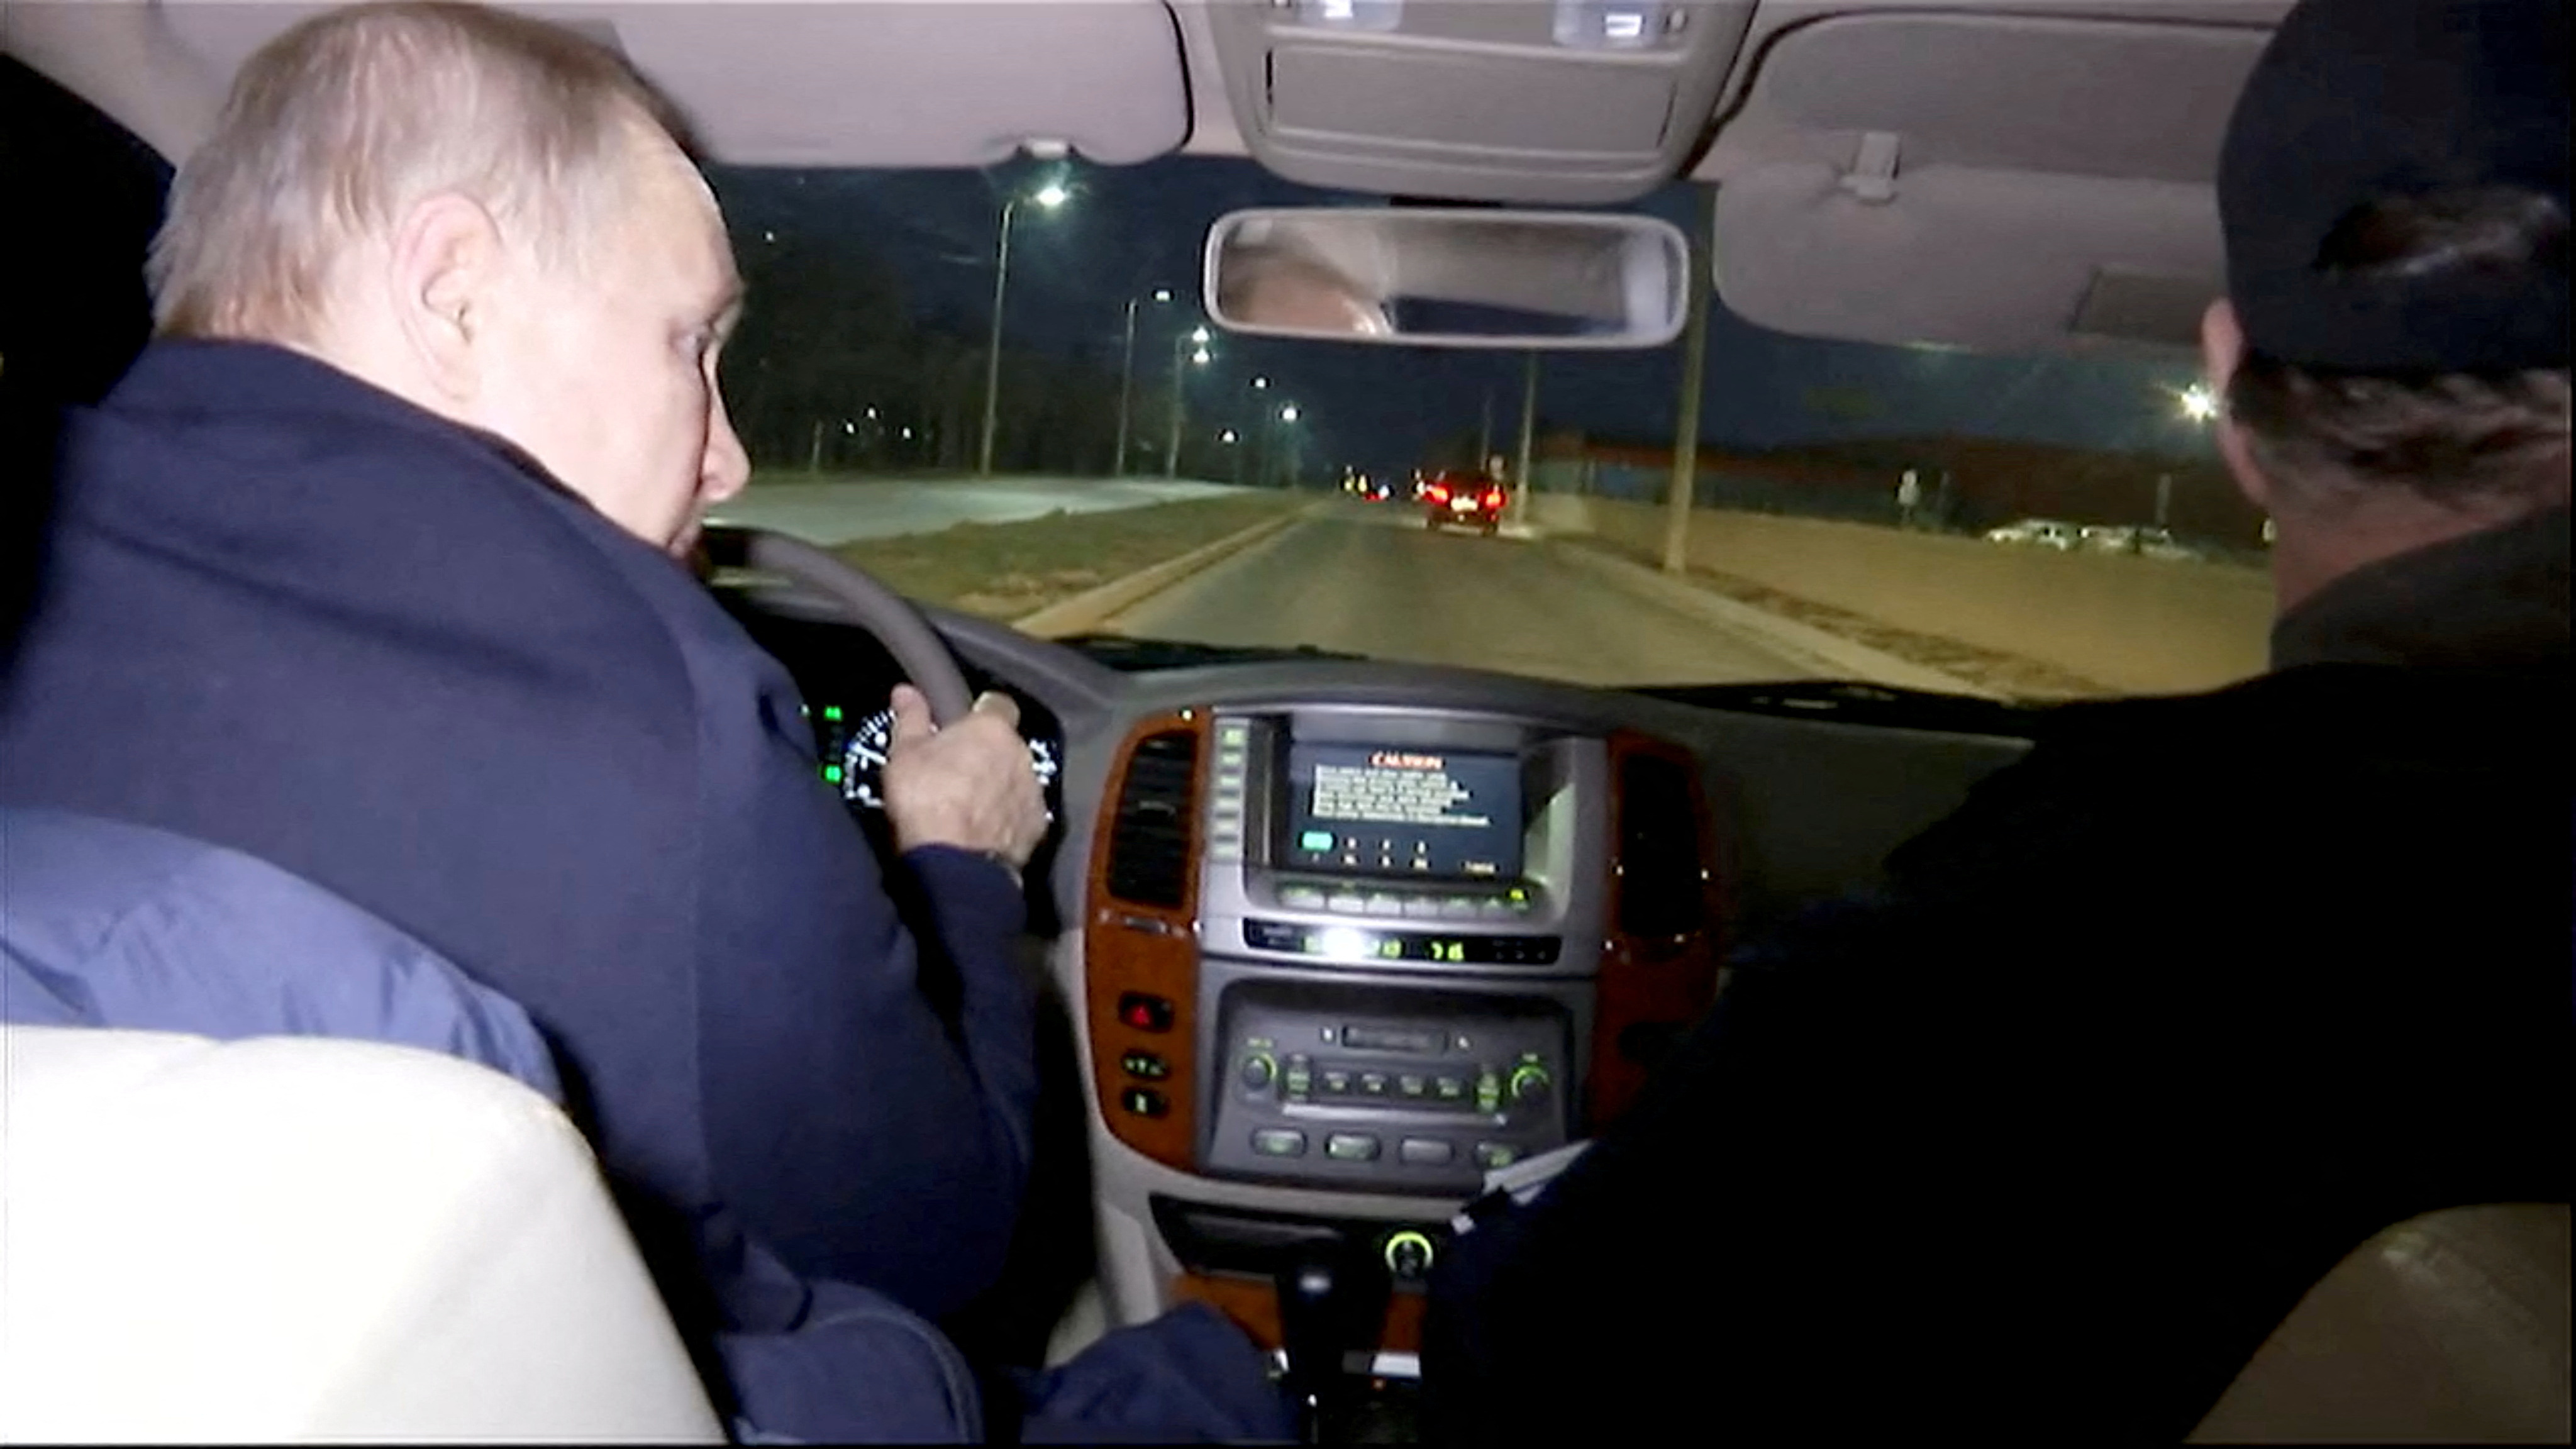 Якобы Путин, якобы за рулем  на дорогах ночного якобы Мариуполя. Фото: Kremlin.ru/Handout via REUTERS